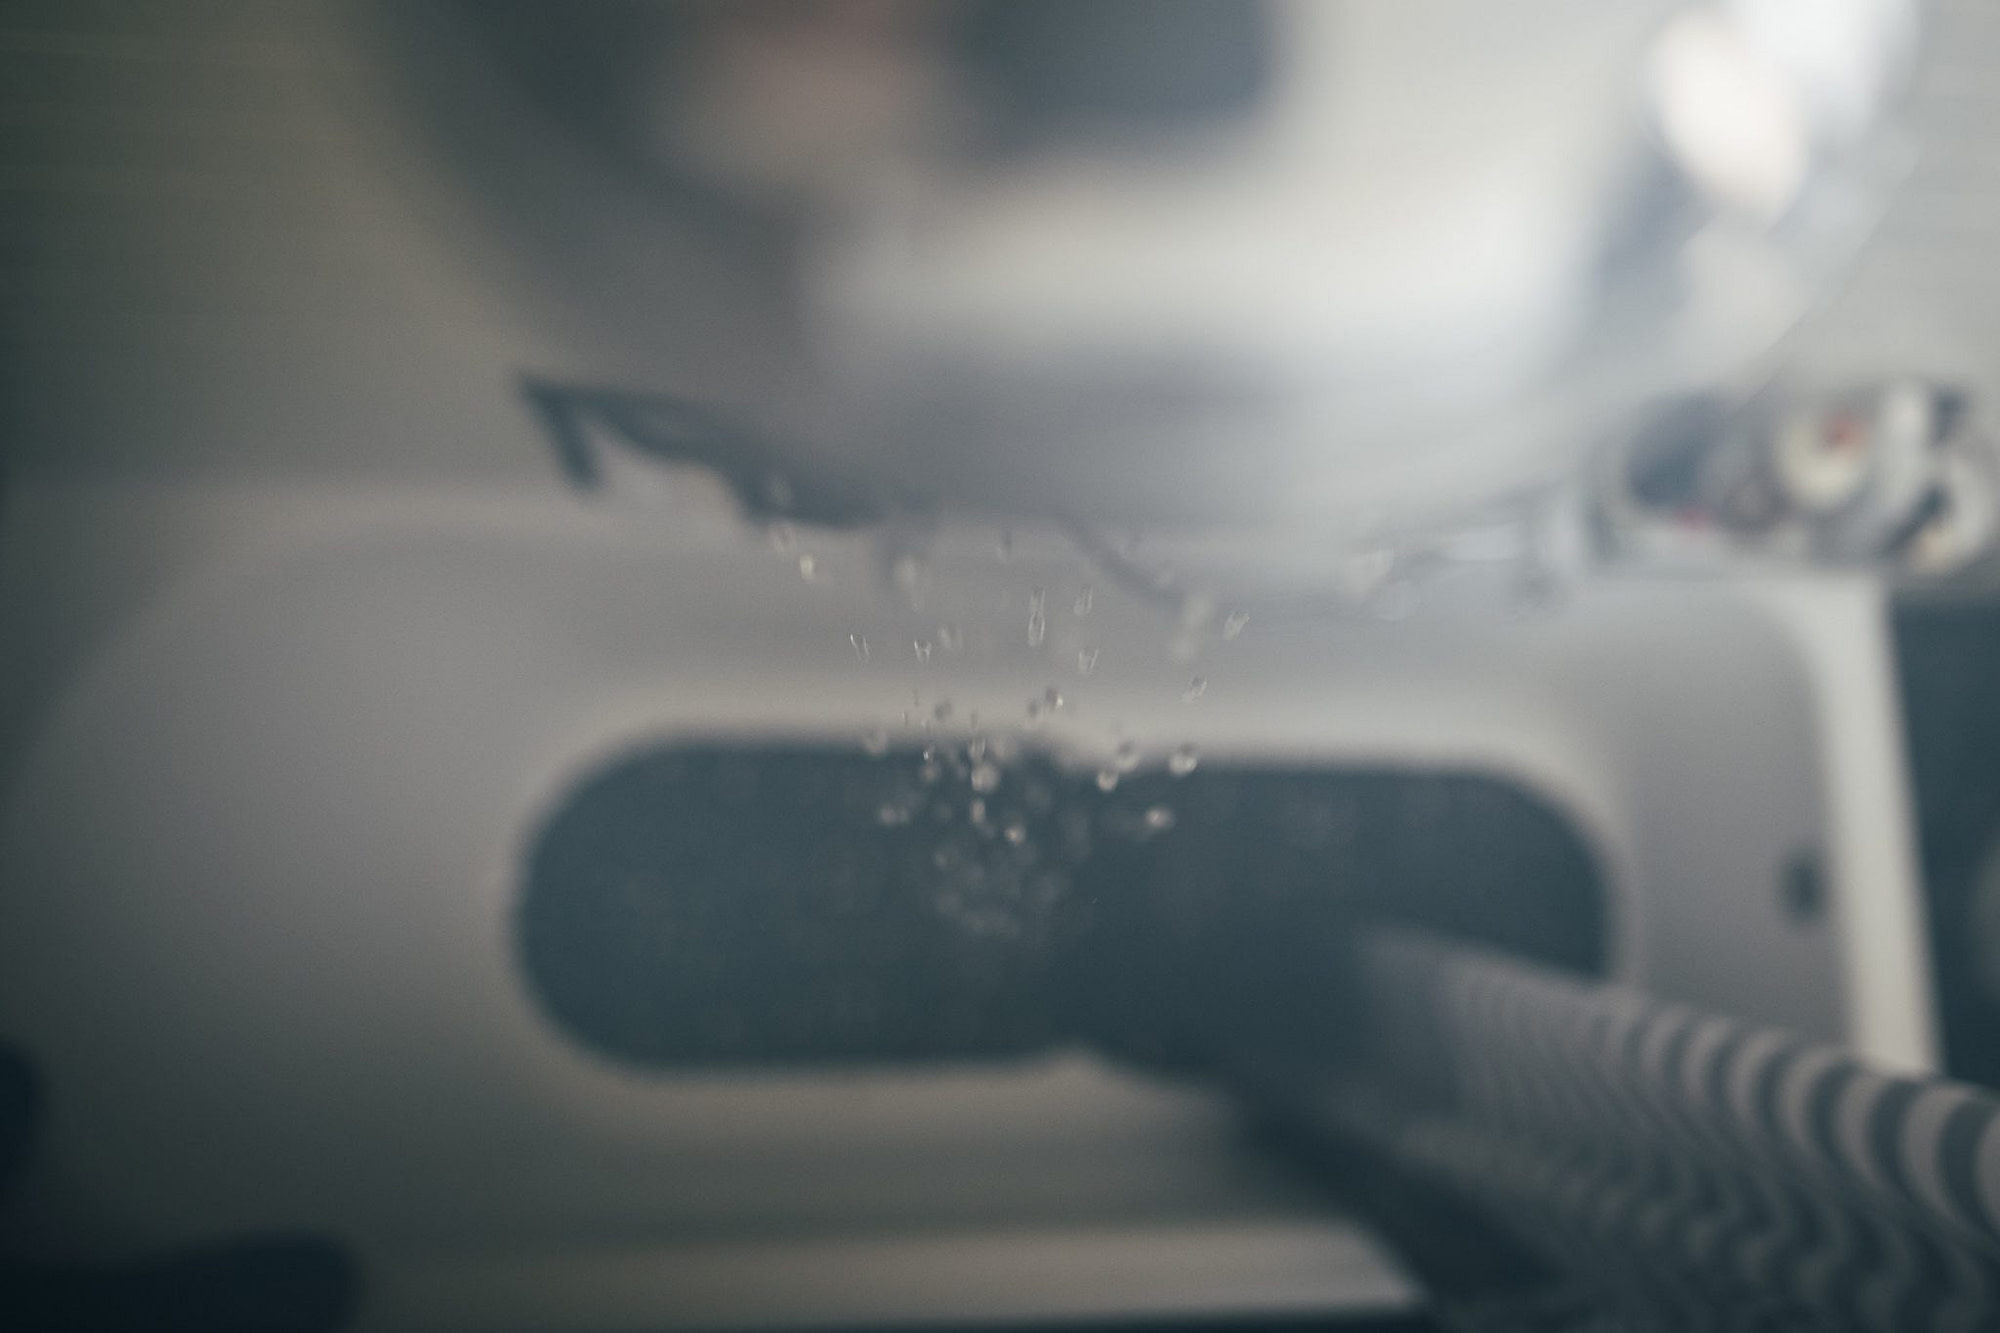 il dettaglio delle gocce d'acqua che scendono dalla doccia offuscando con il calore la foto